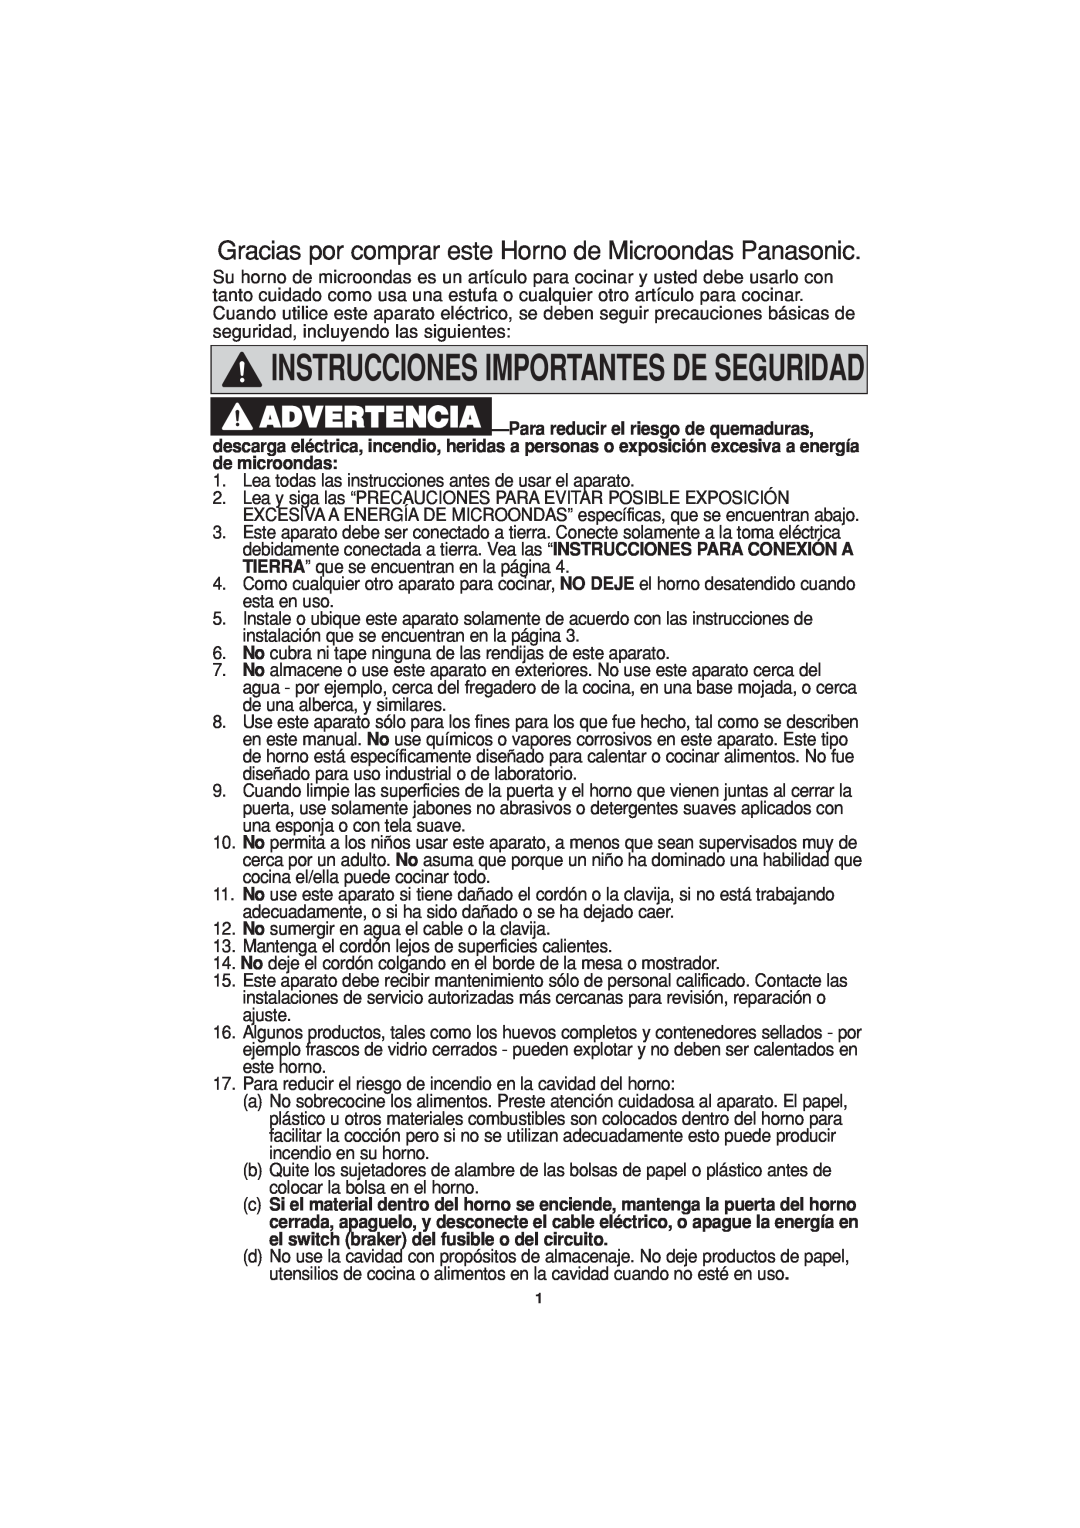 Panasonic NN-T694 operating instructions Instrucciones Importantes De Seguridad 